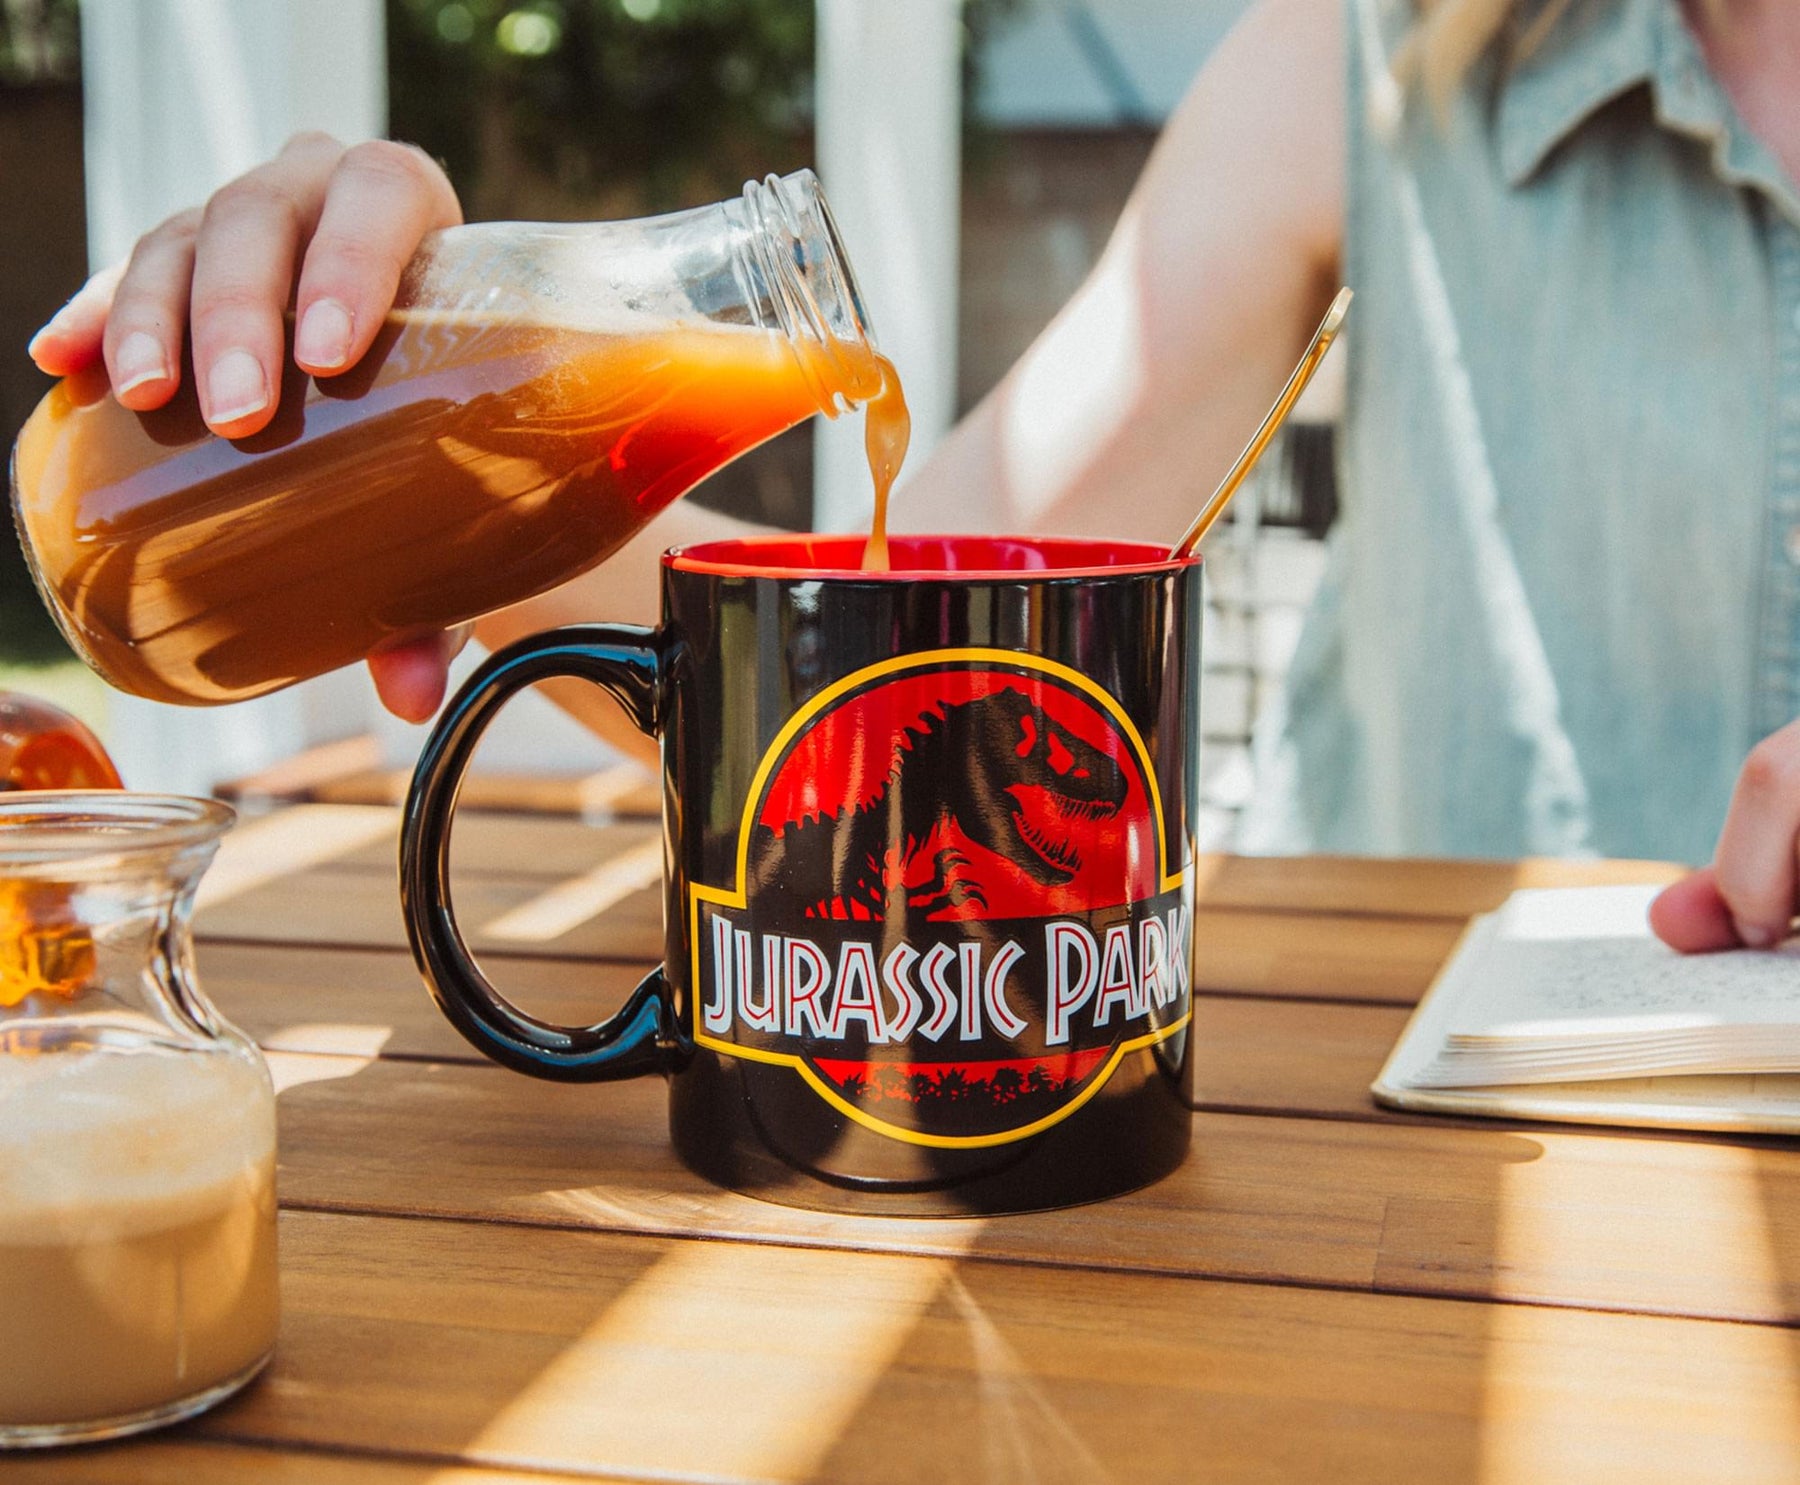 Jurassic Park Logo Black Ceramic Mug | Holds 20 Ounces